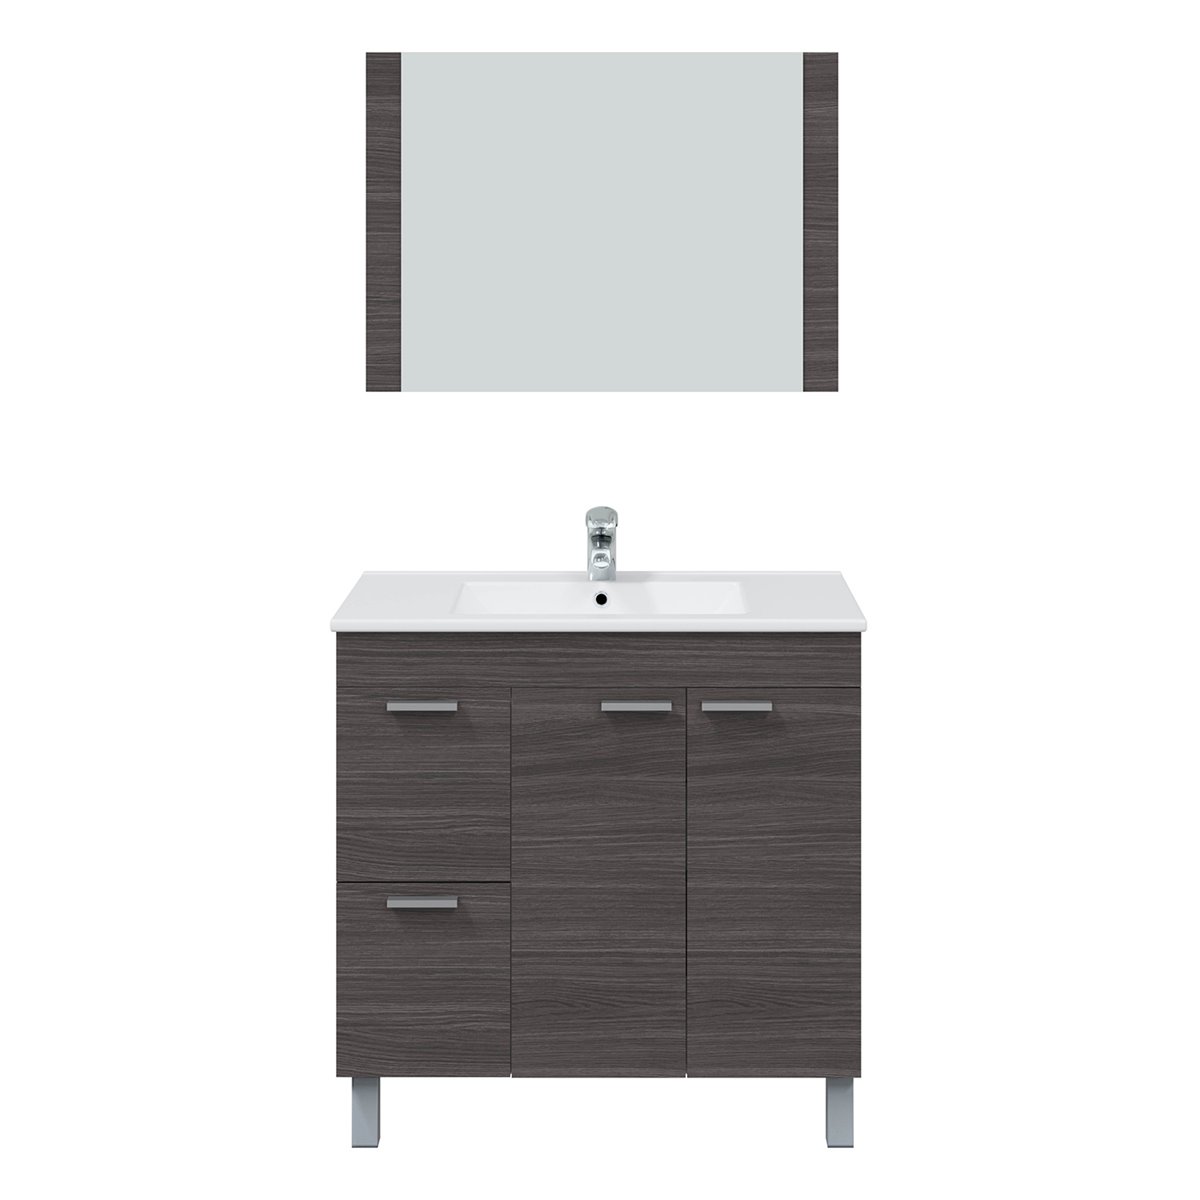 Mueble de baño suspendido Axel 2 cajones con espejo, sin lavabo, Color  Cemento